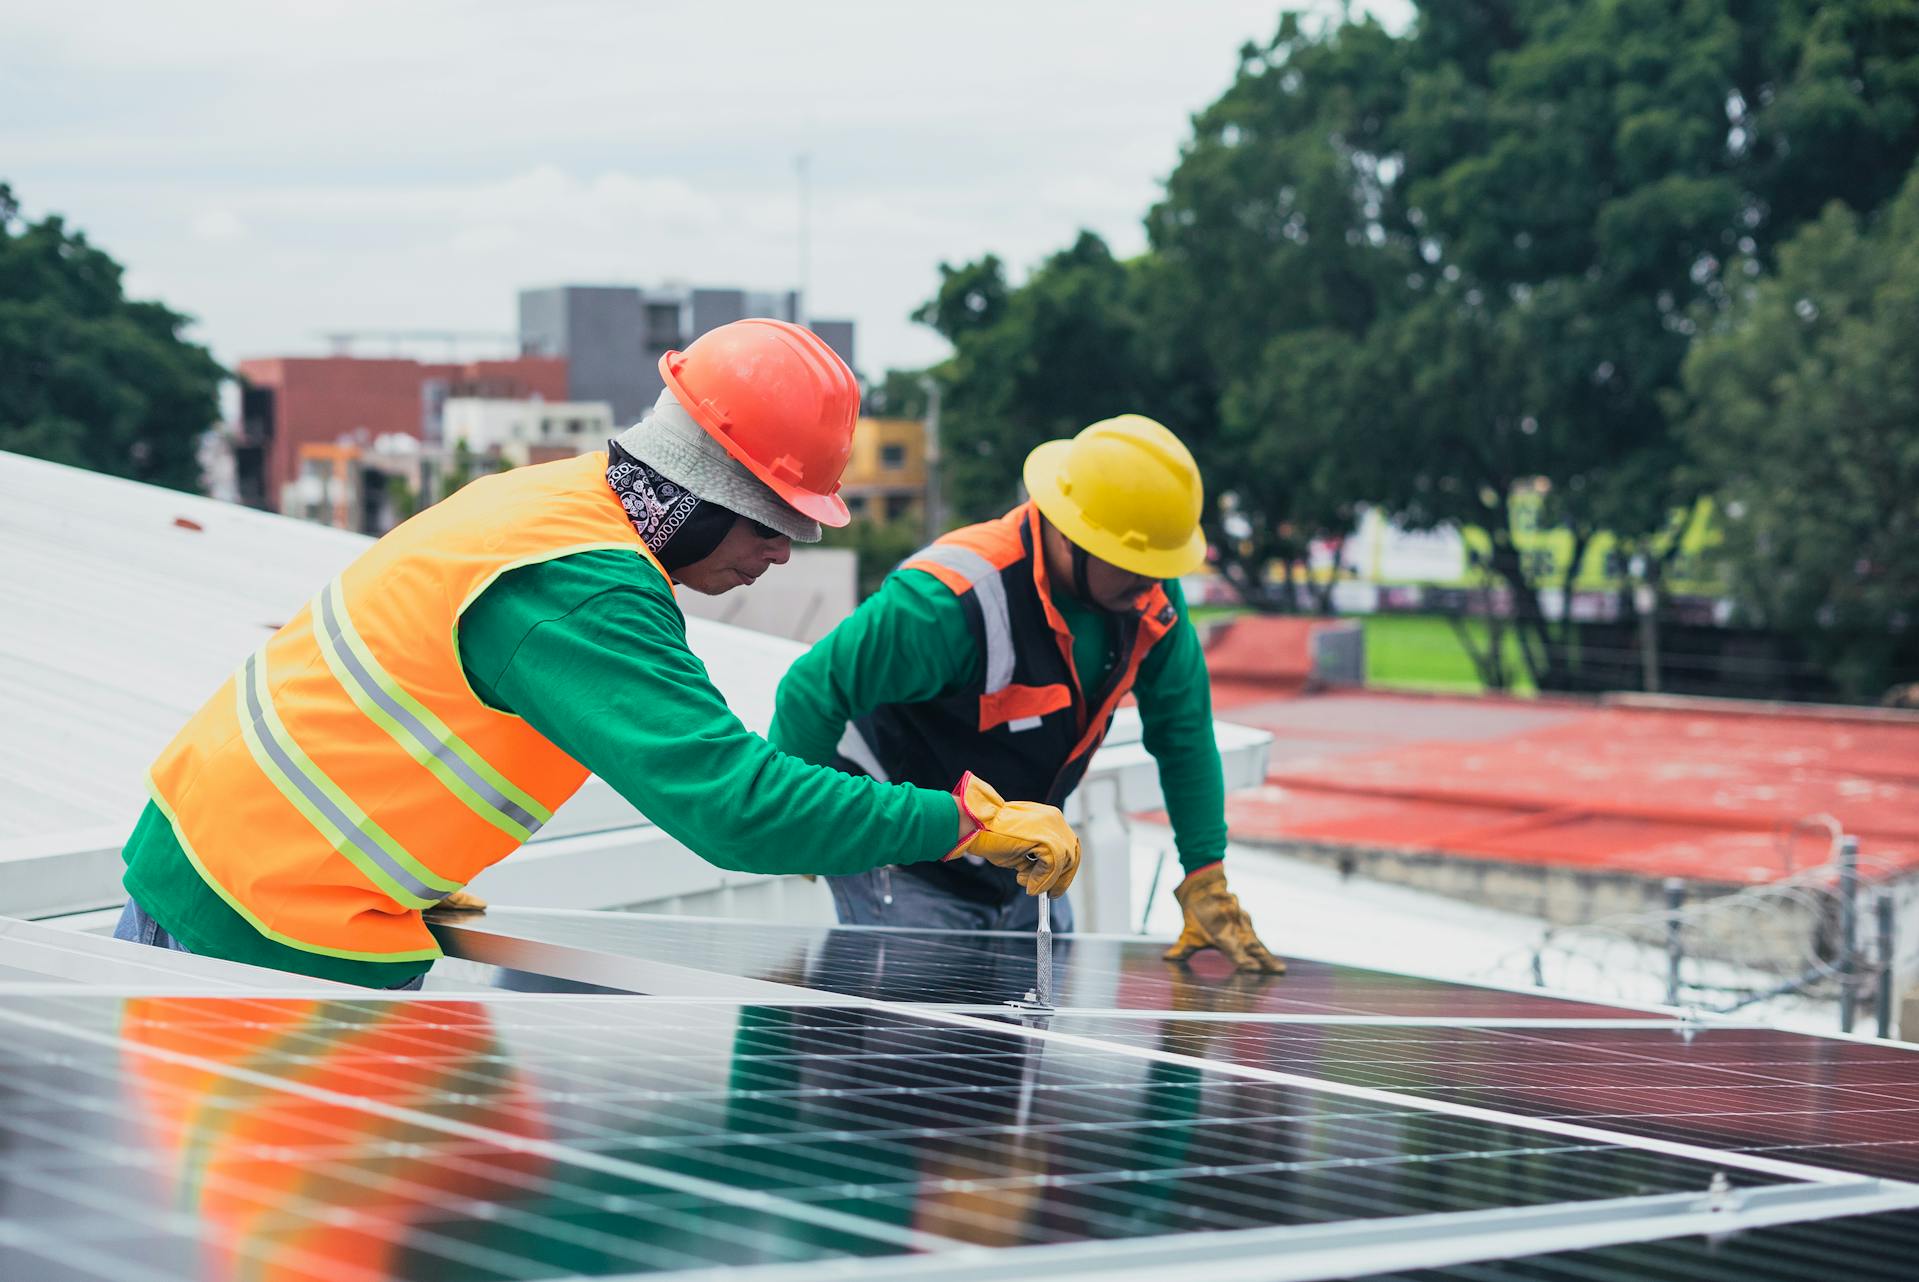 Installer un système photovoltaïque à son domicile, c'est produire et consommer sa propre énergie à moindre coût. © Los Muertos Crew, Pexels